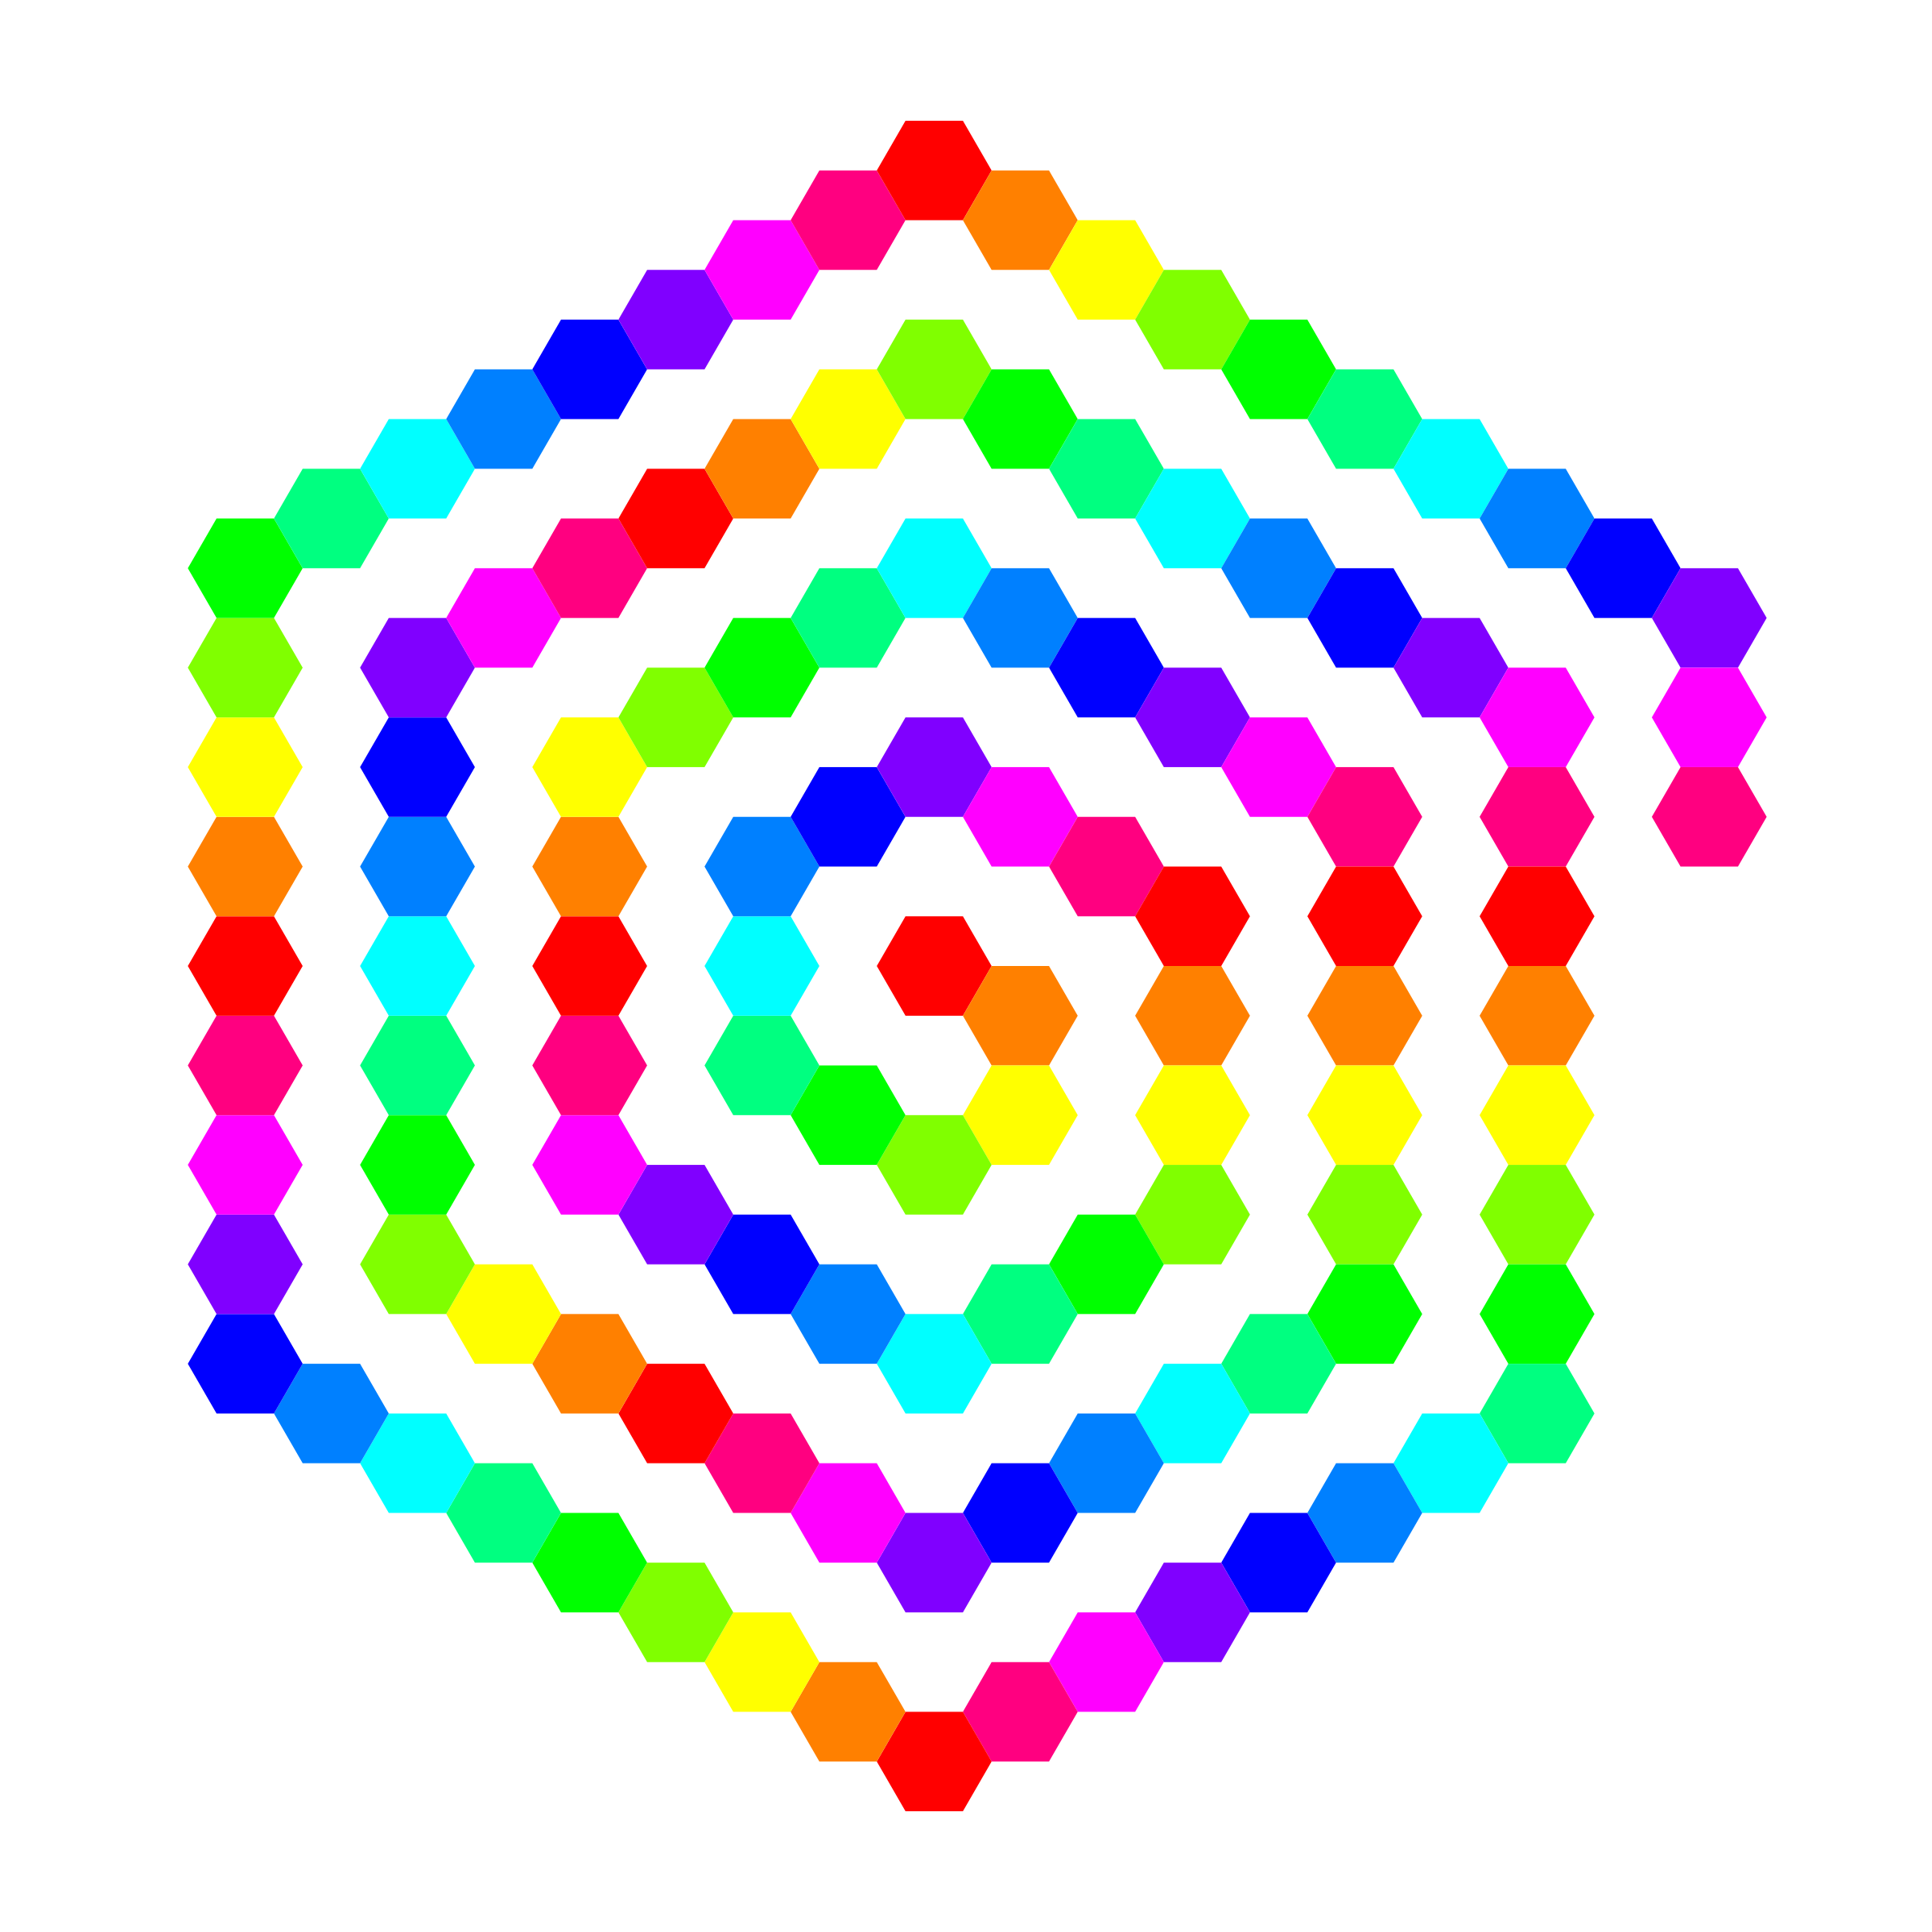 Hexagon small